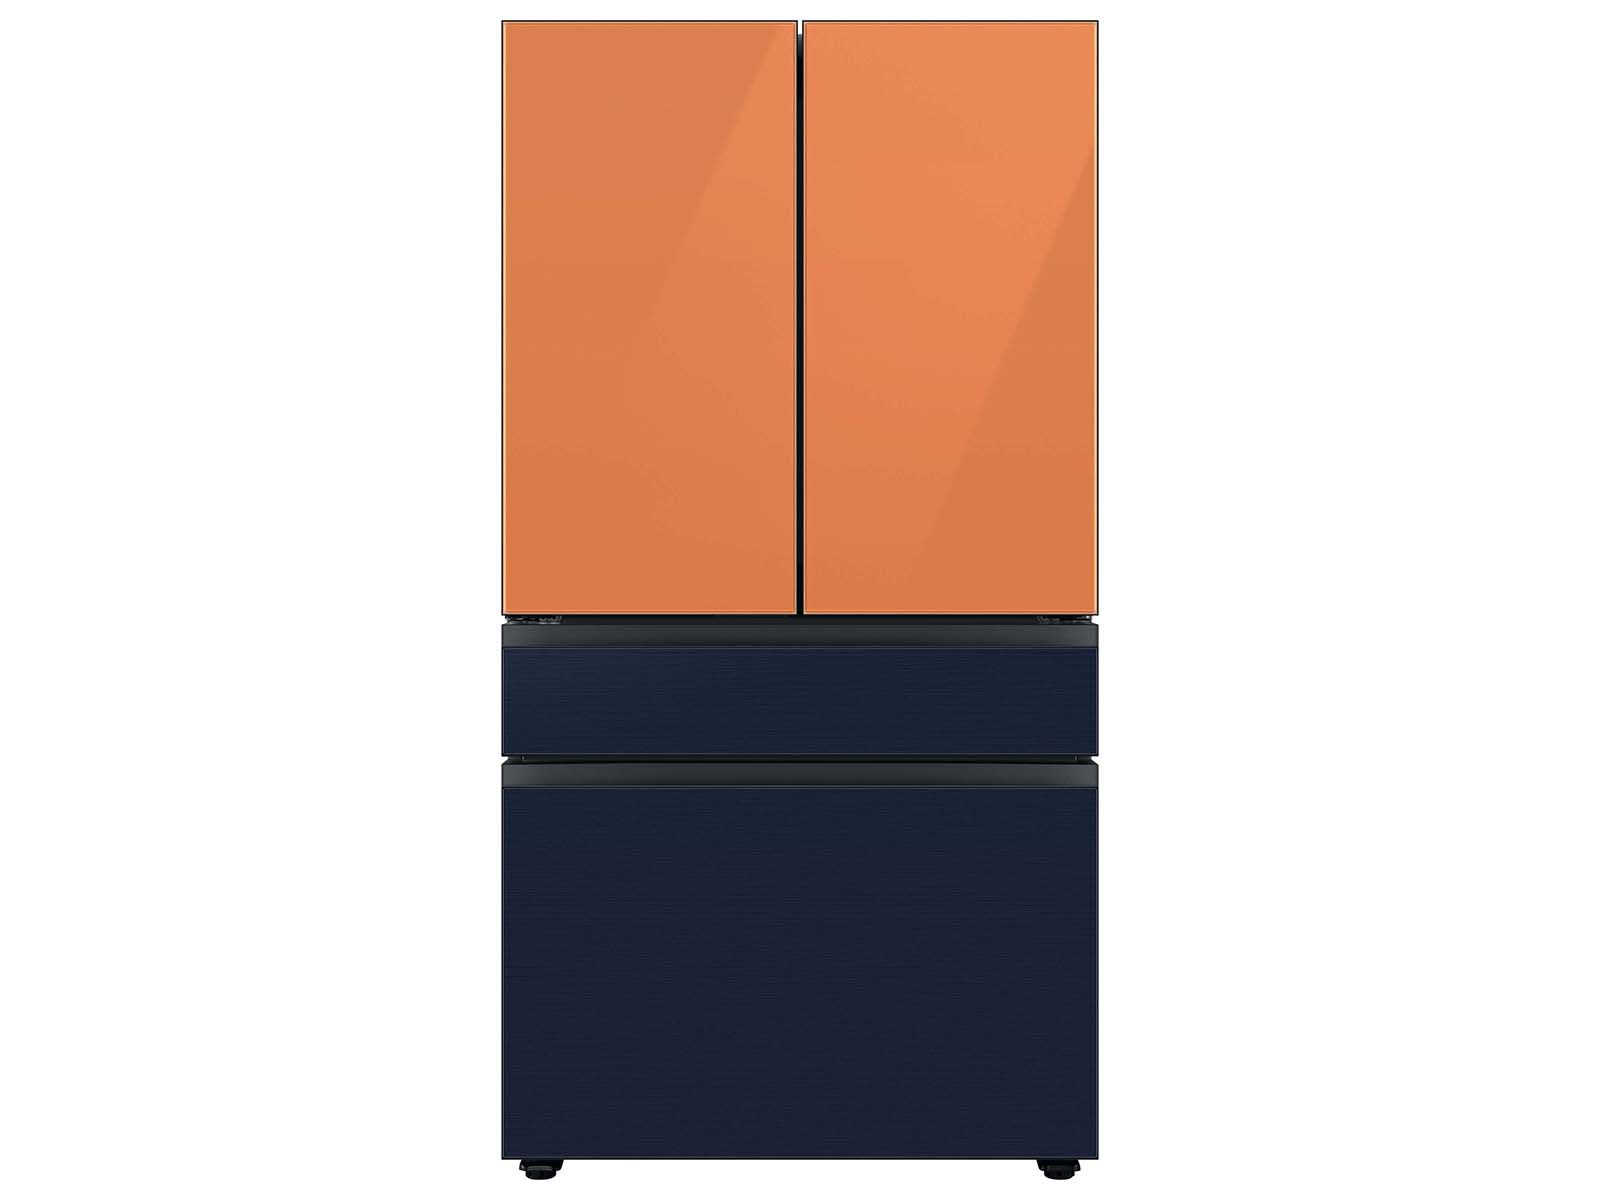 Thumbnail image of Bespoke 4-Door French Door Refrigerator Panel in Navy Steel - Middle Panel